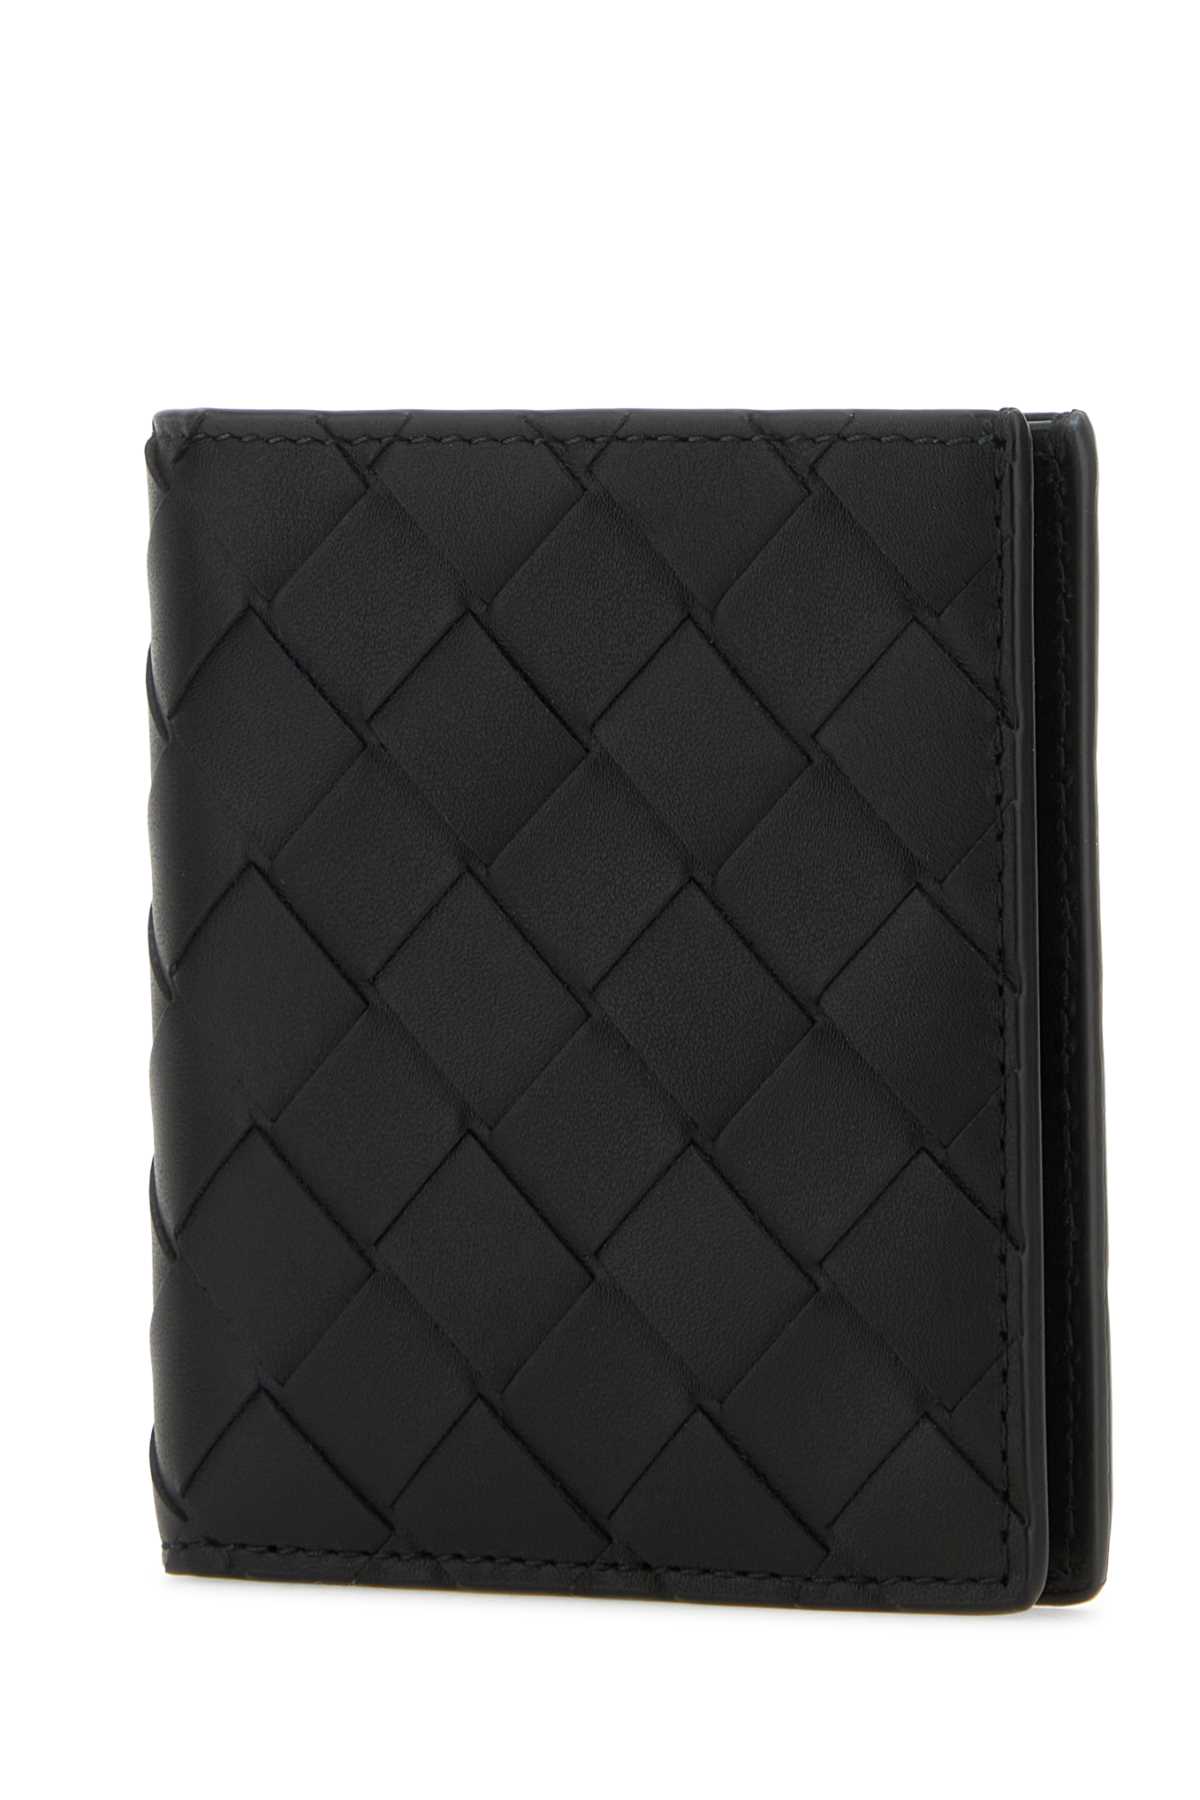 Bottega Veneta Black Leather Intrecciato Wallet In Blacksilver